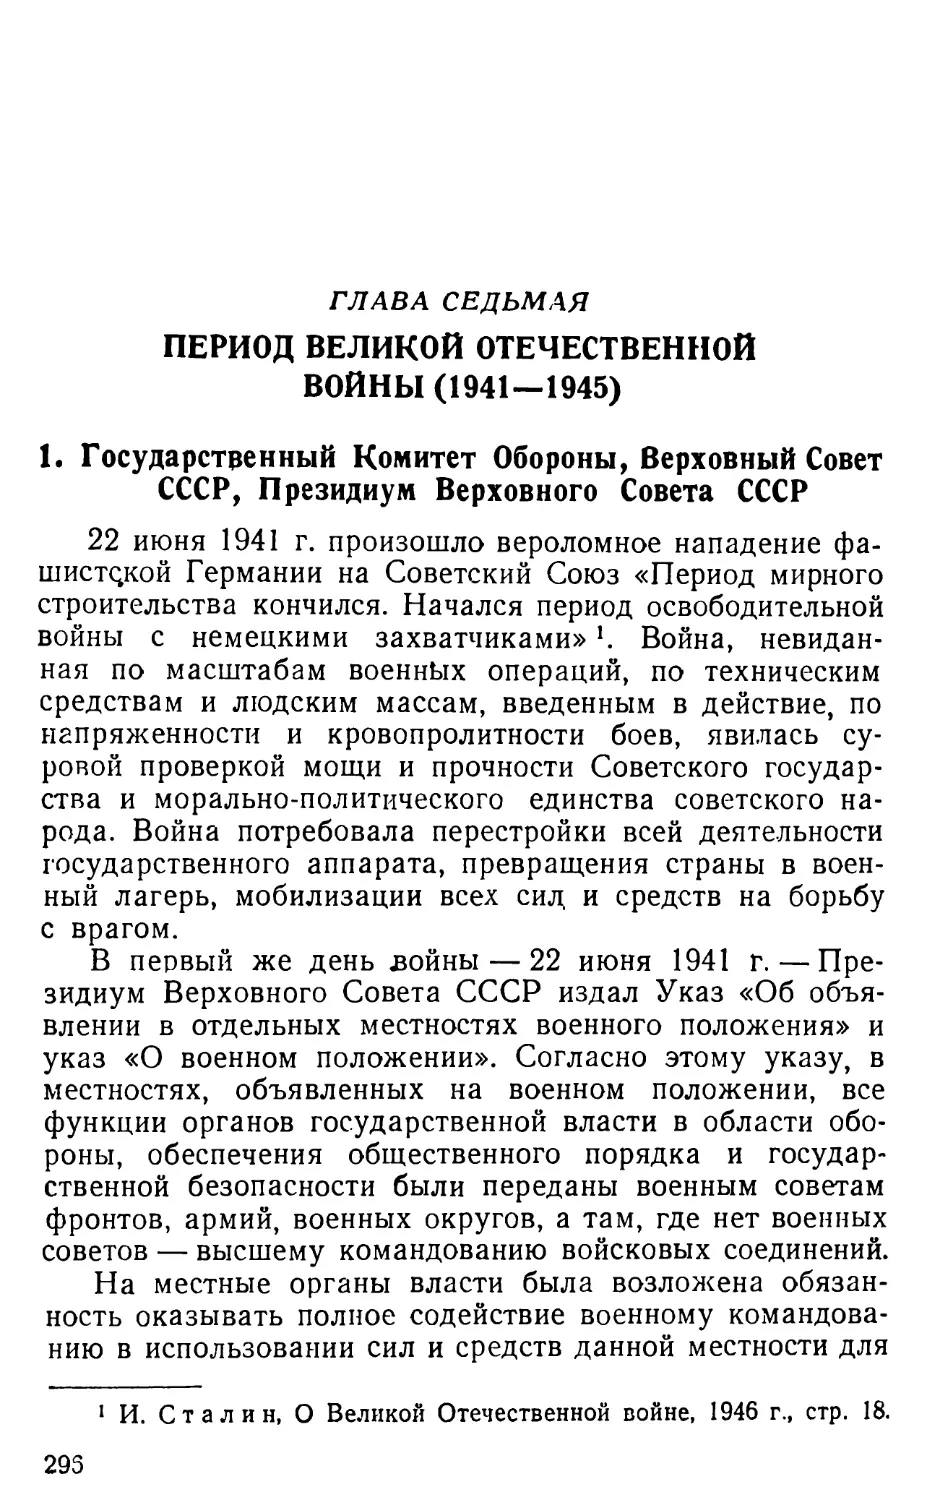 1. Государственный Комитет Обороны, Верховный Совет СССР, Президиум Верховного Совета СССР